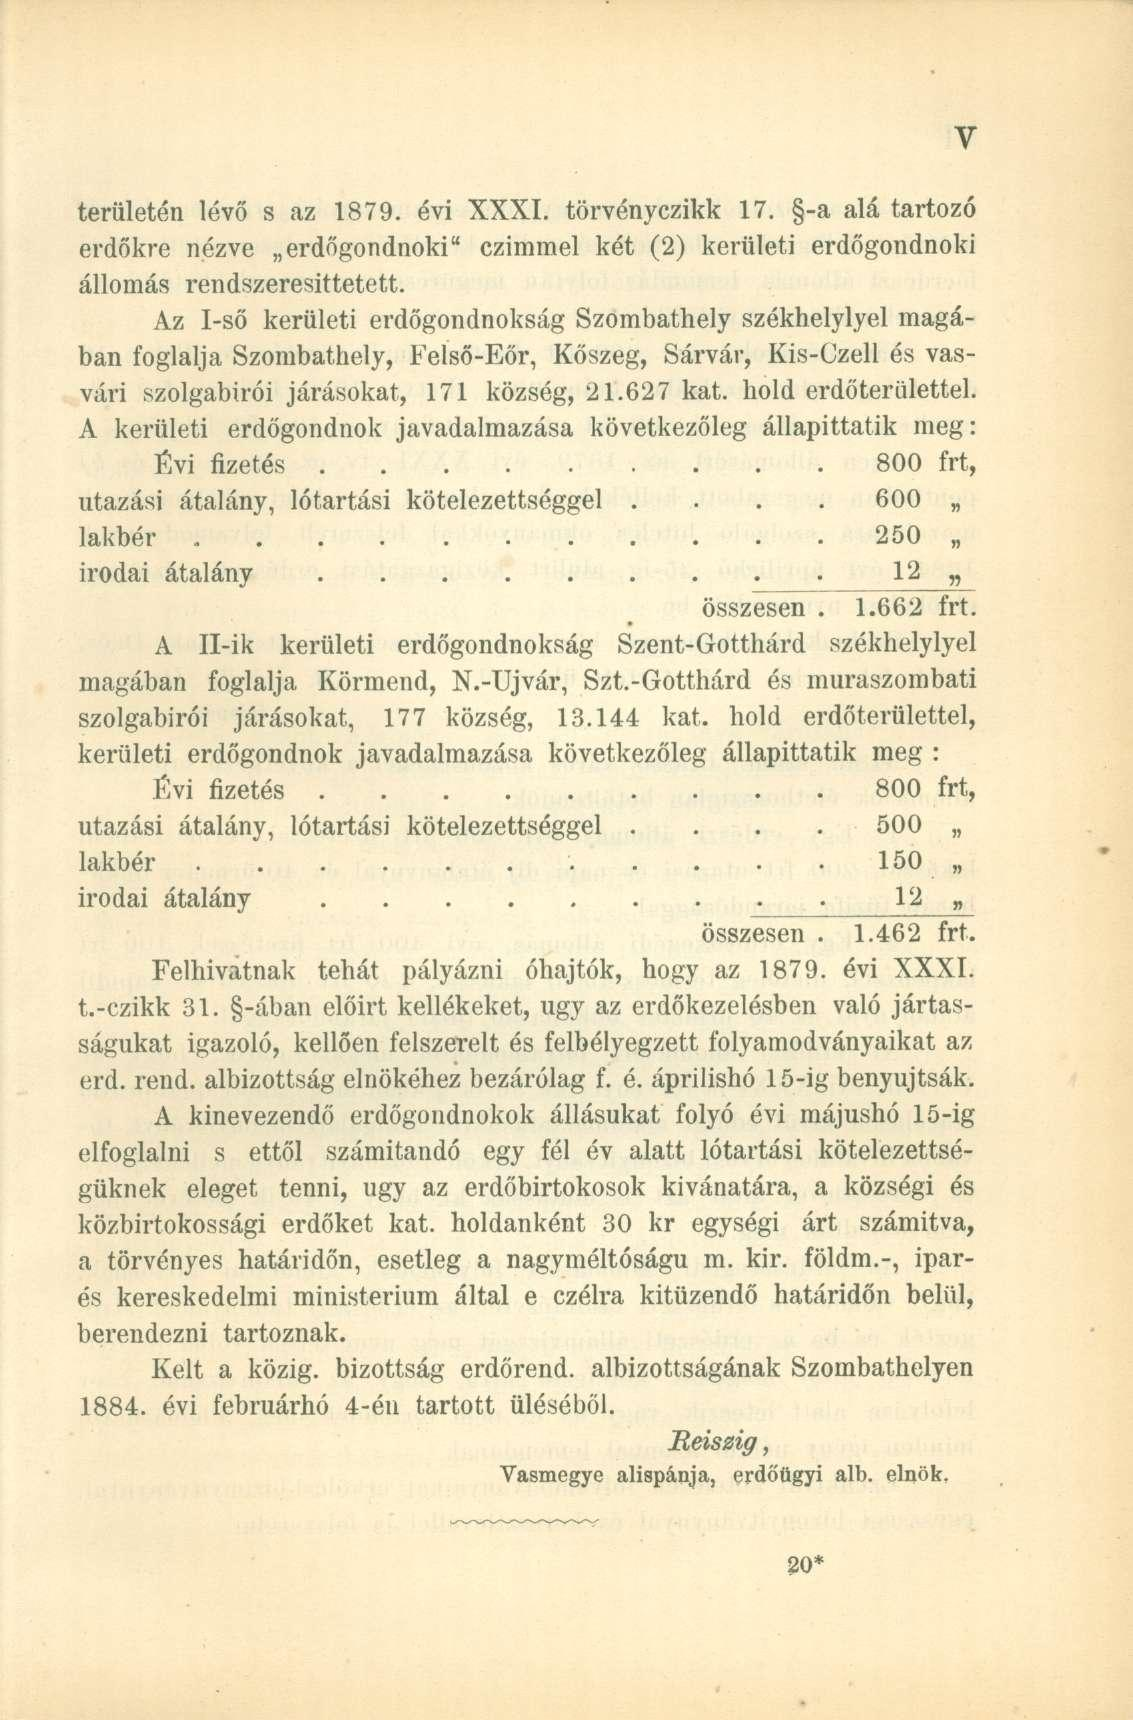 területén lévő s az 1879. évi XXXI. törvényczikk 17. -a alá tartozó erdőkre nézve erdőgondnoki" czimmel két (2) kerületi erdőgondnoki állomás rendszeresittetett.